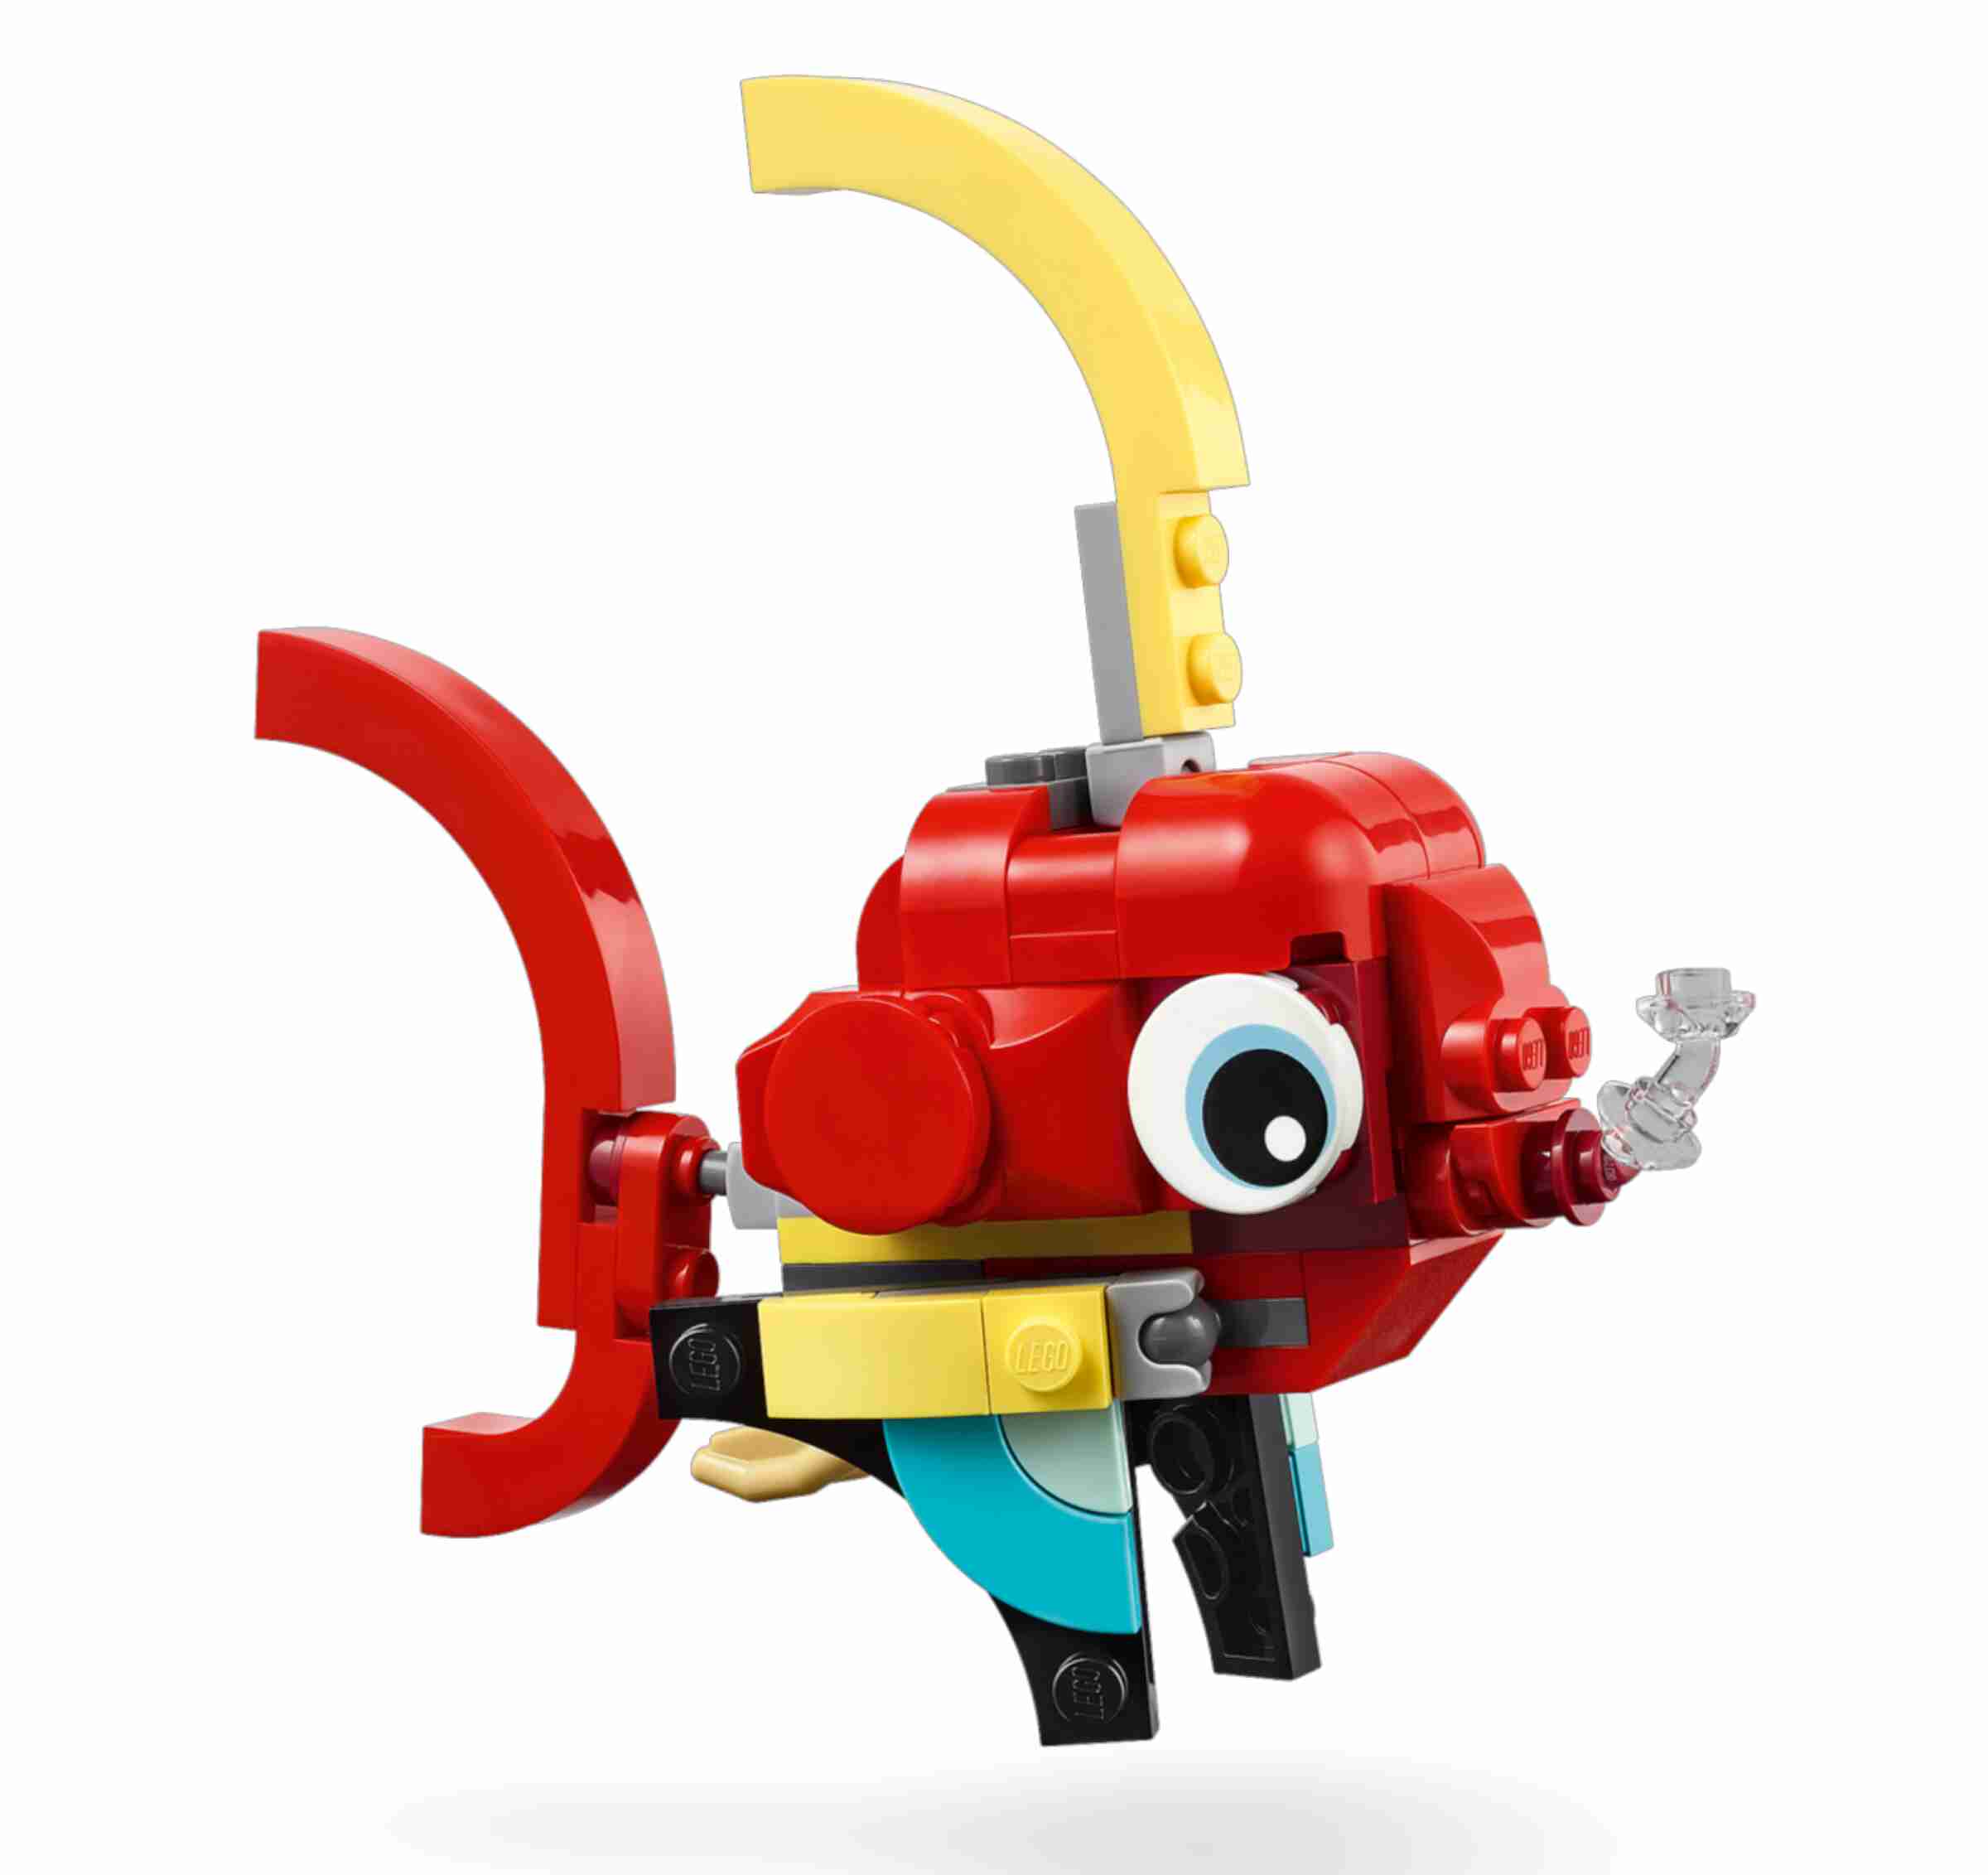 LEGO 31145 Creator 3-in-1 Roter Drache, Phönix oder Spielzeugfisch